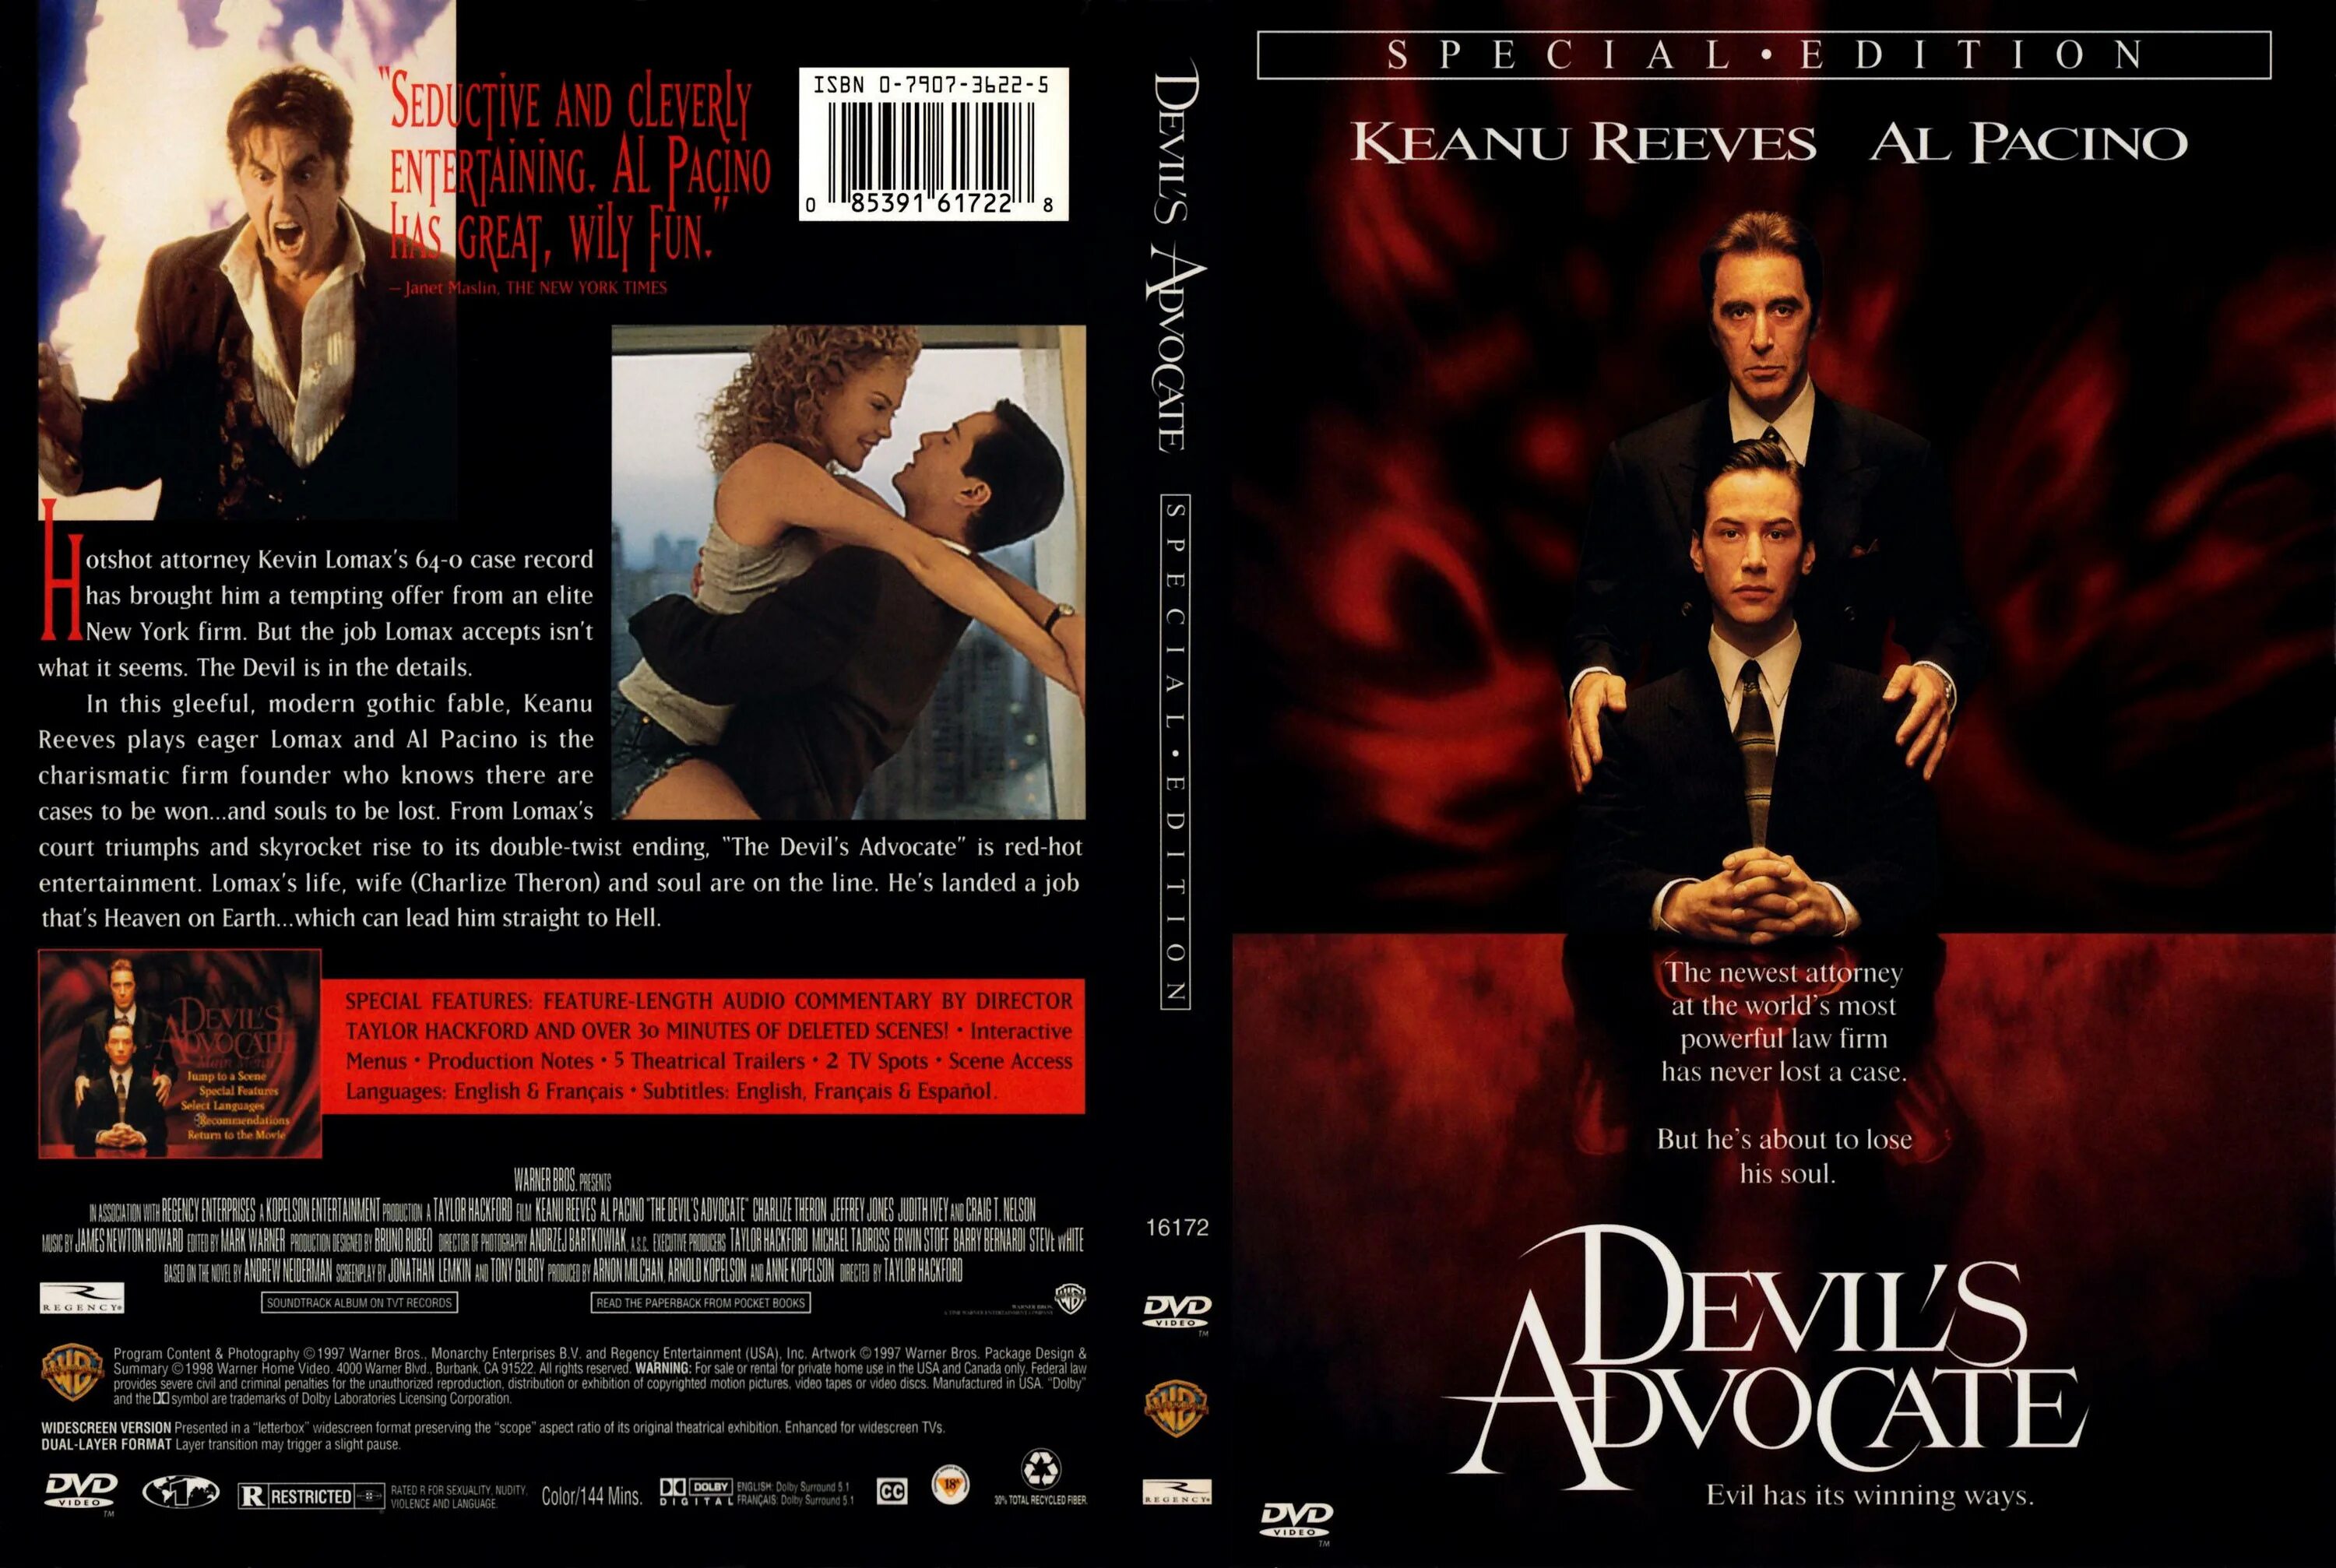 Адвокат дьявола - the Devil s Advocate (1997). Двд адвокат дьявола. Аль Пачино адвокат дьявола. Адвокат дьявола без рекламы